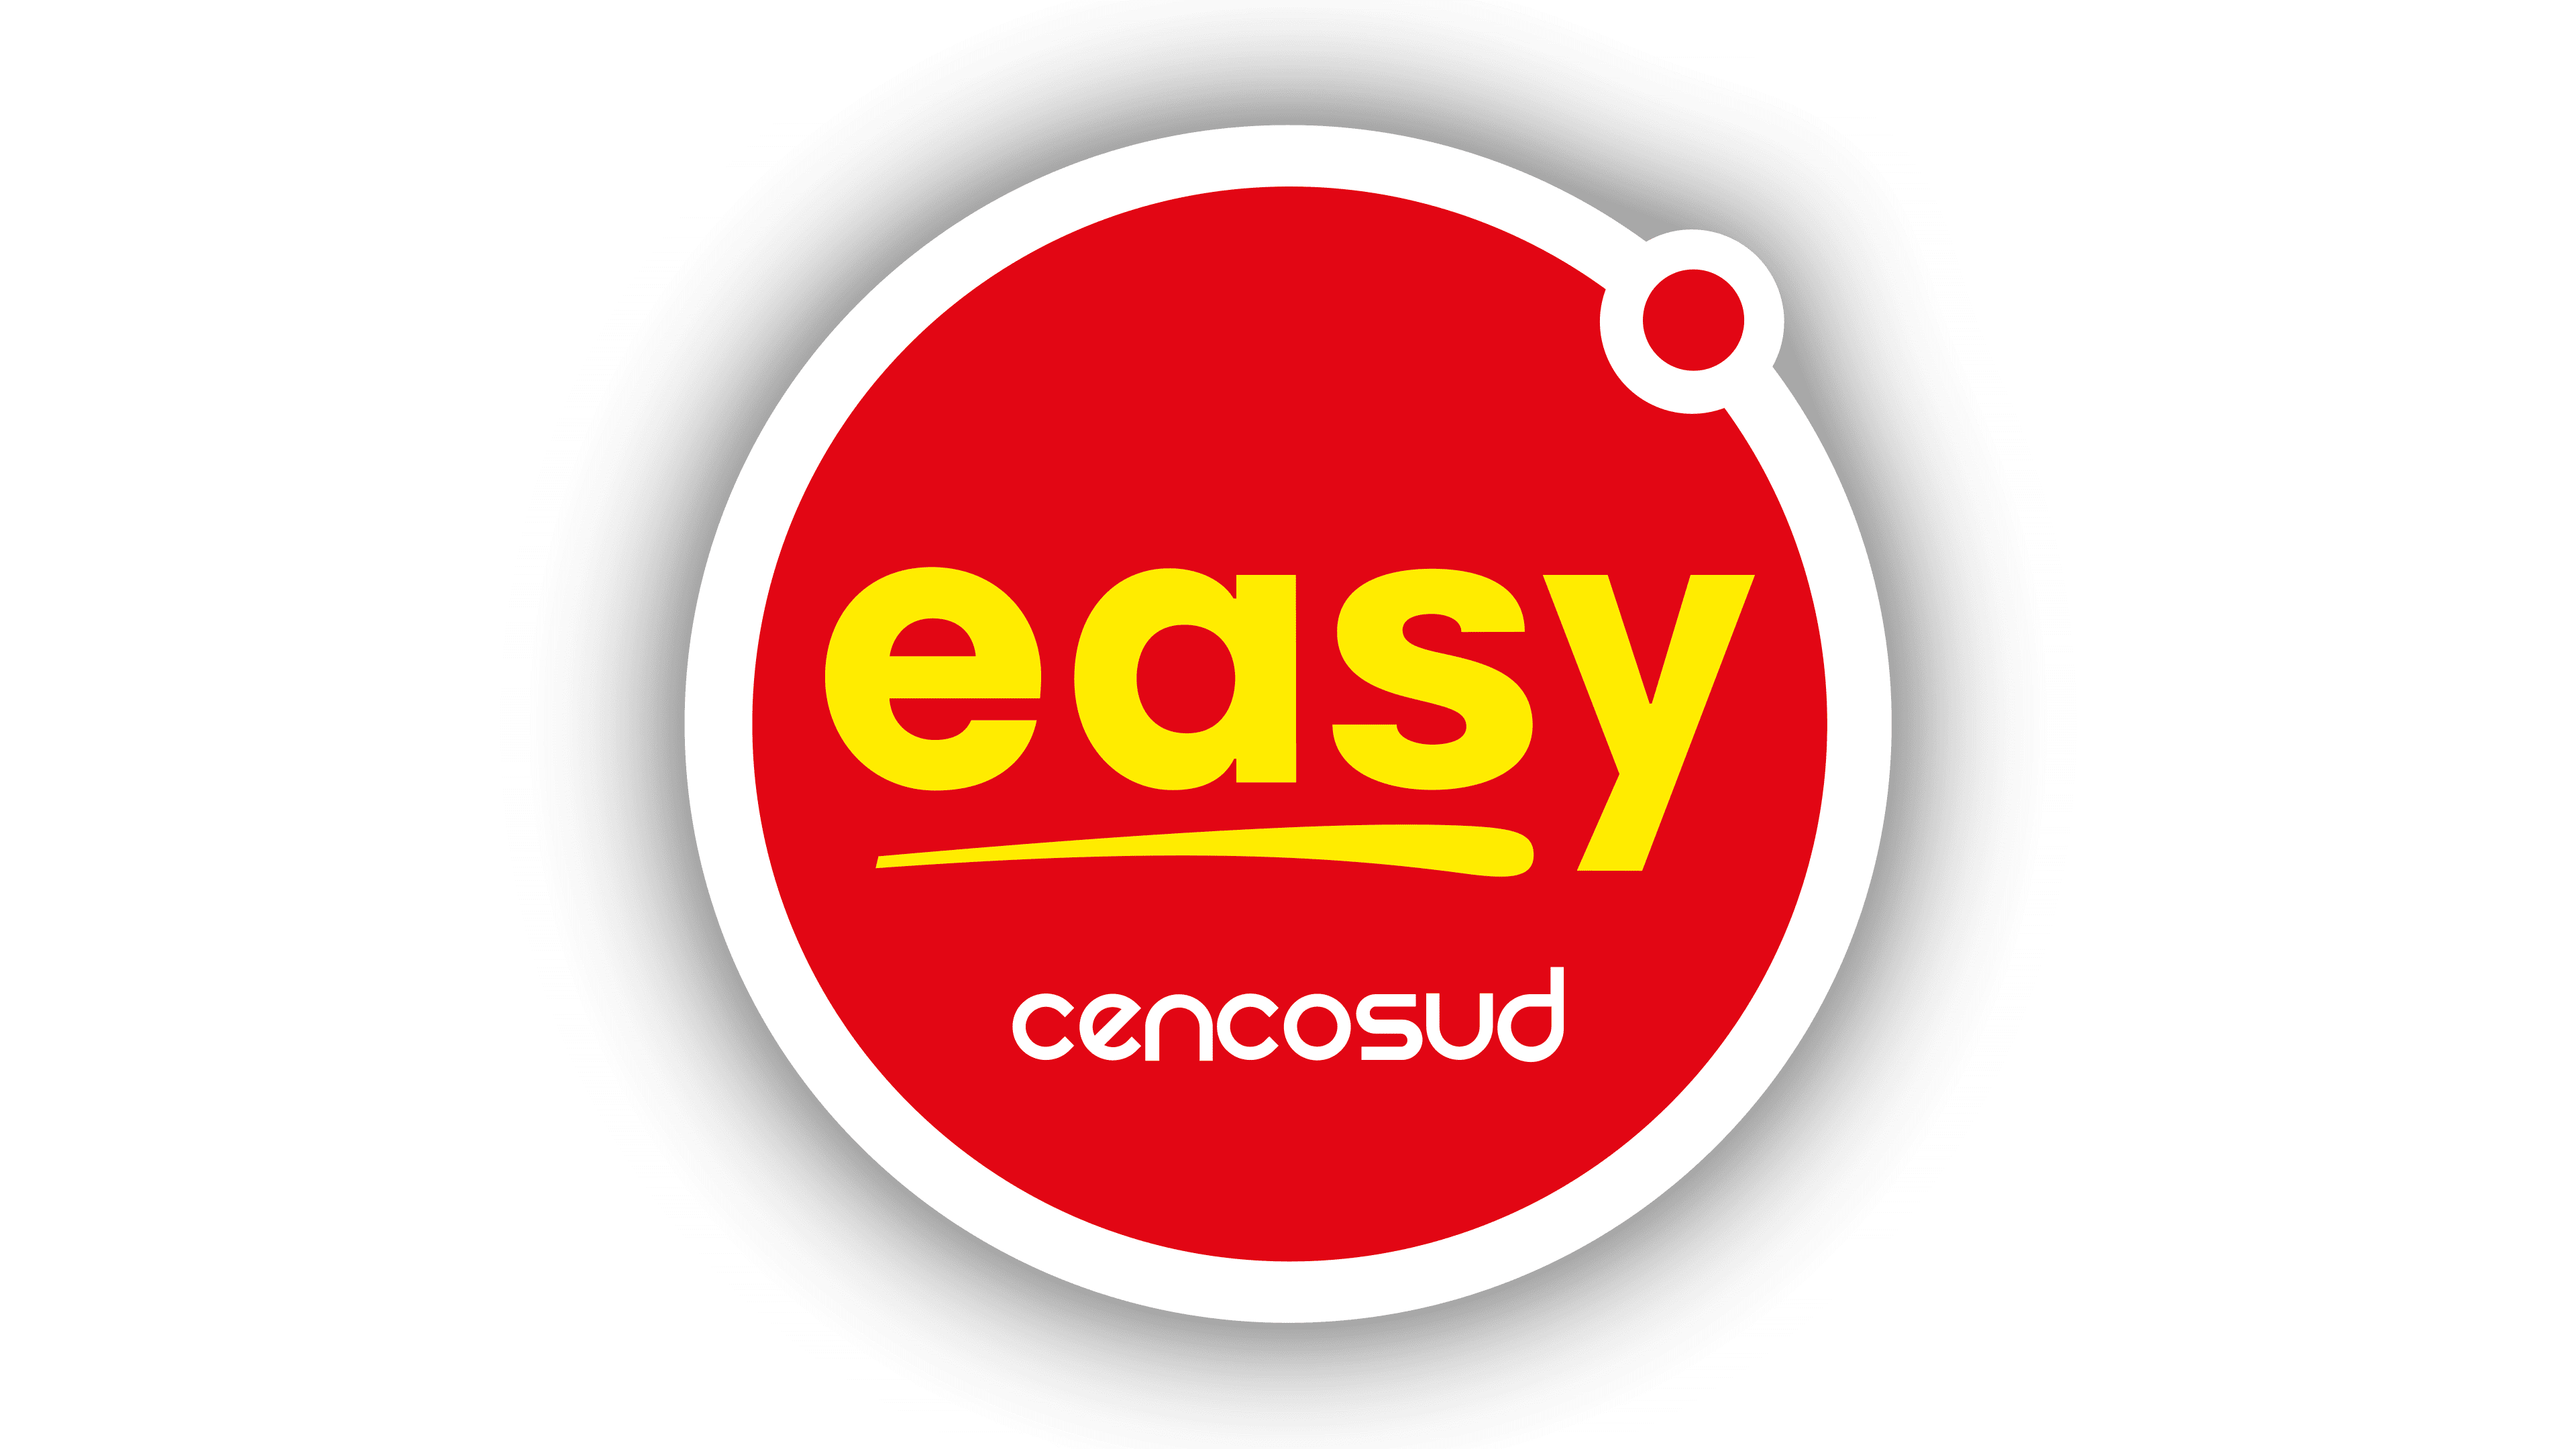 Easy Logo